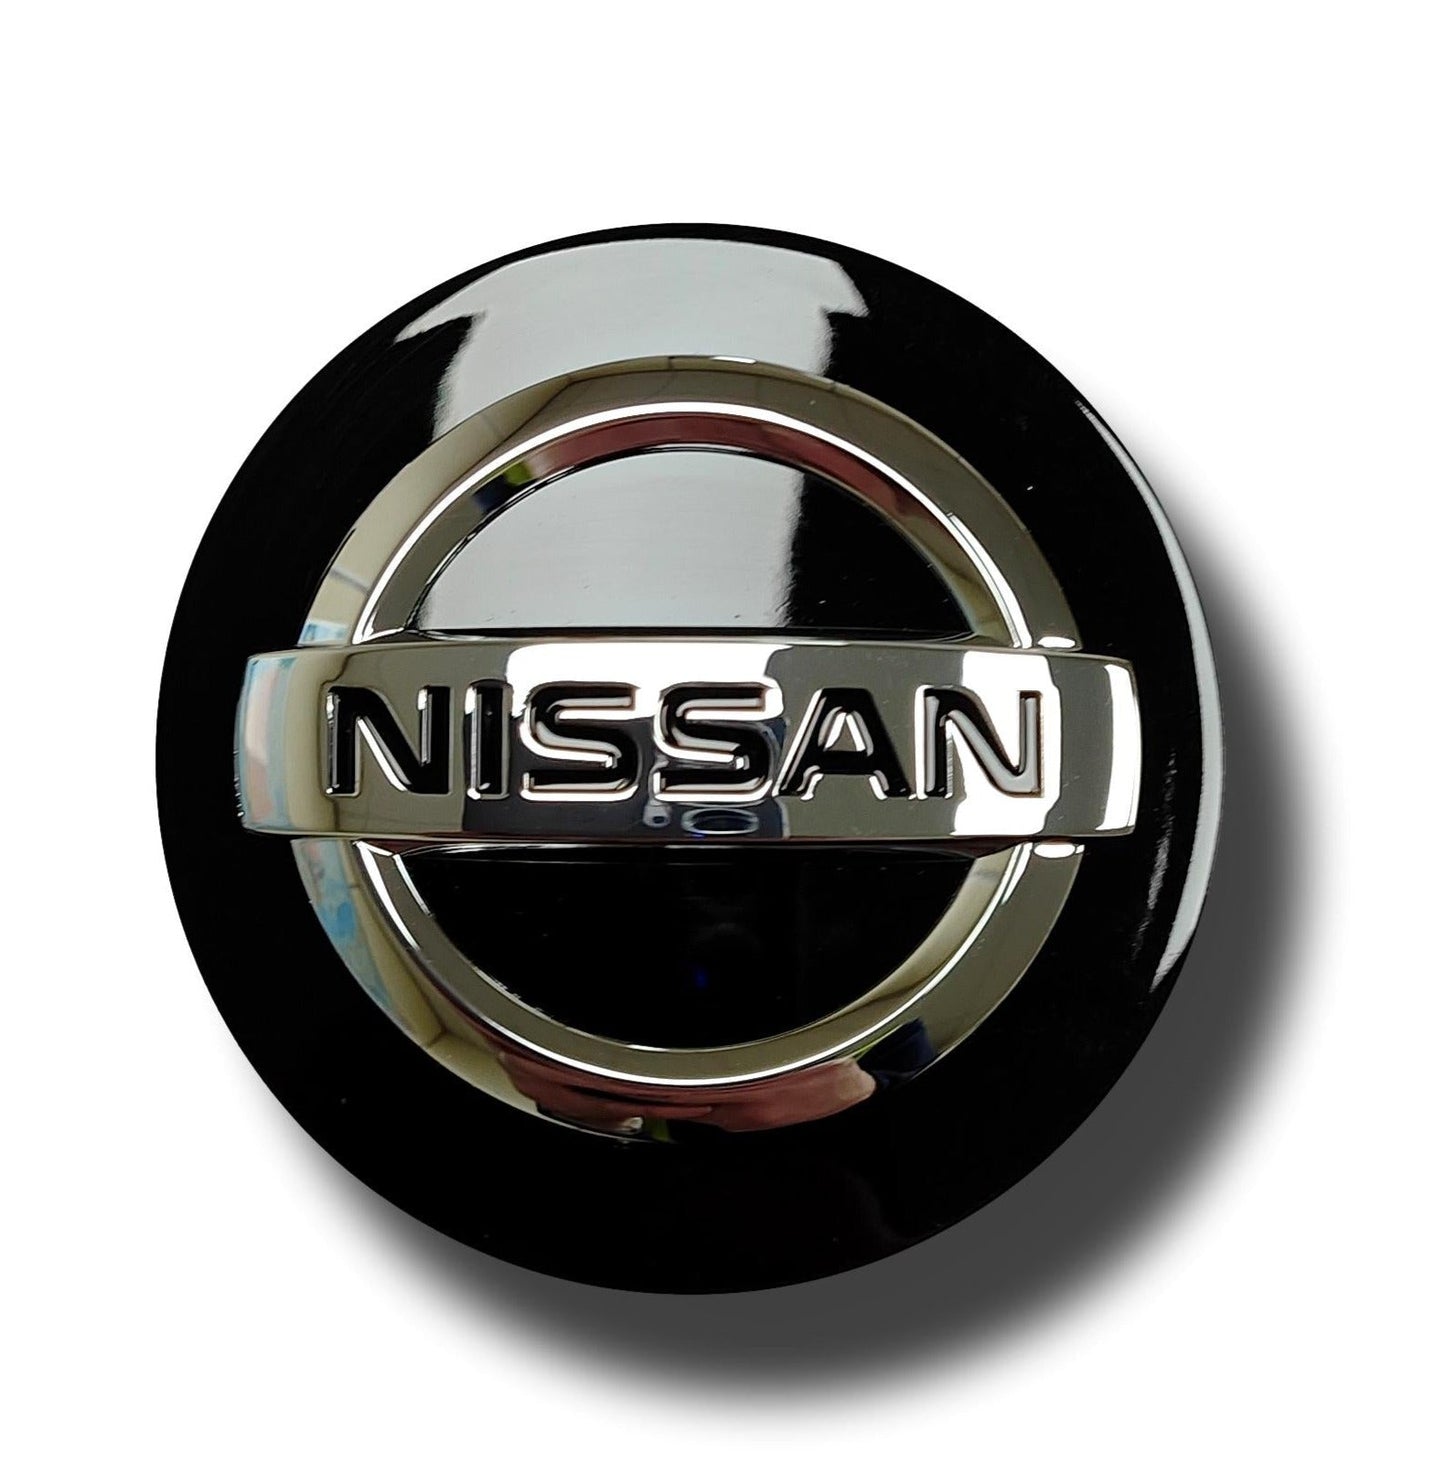 Véritable nouveau capuchon de centre de roue Nissan Navara noir simple 2014&gt;ON 40342 6HL6A